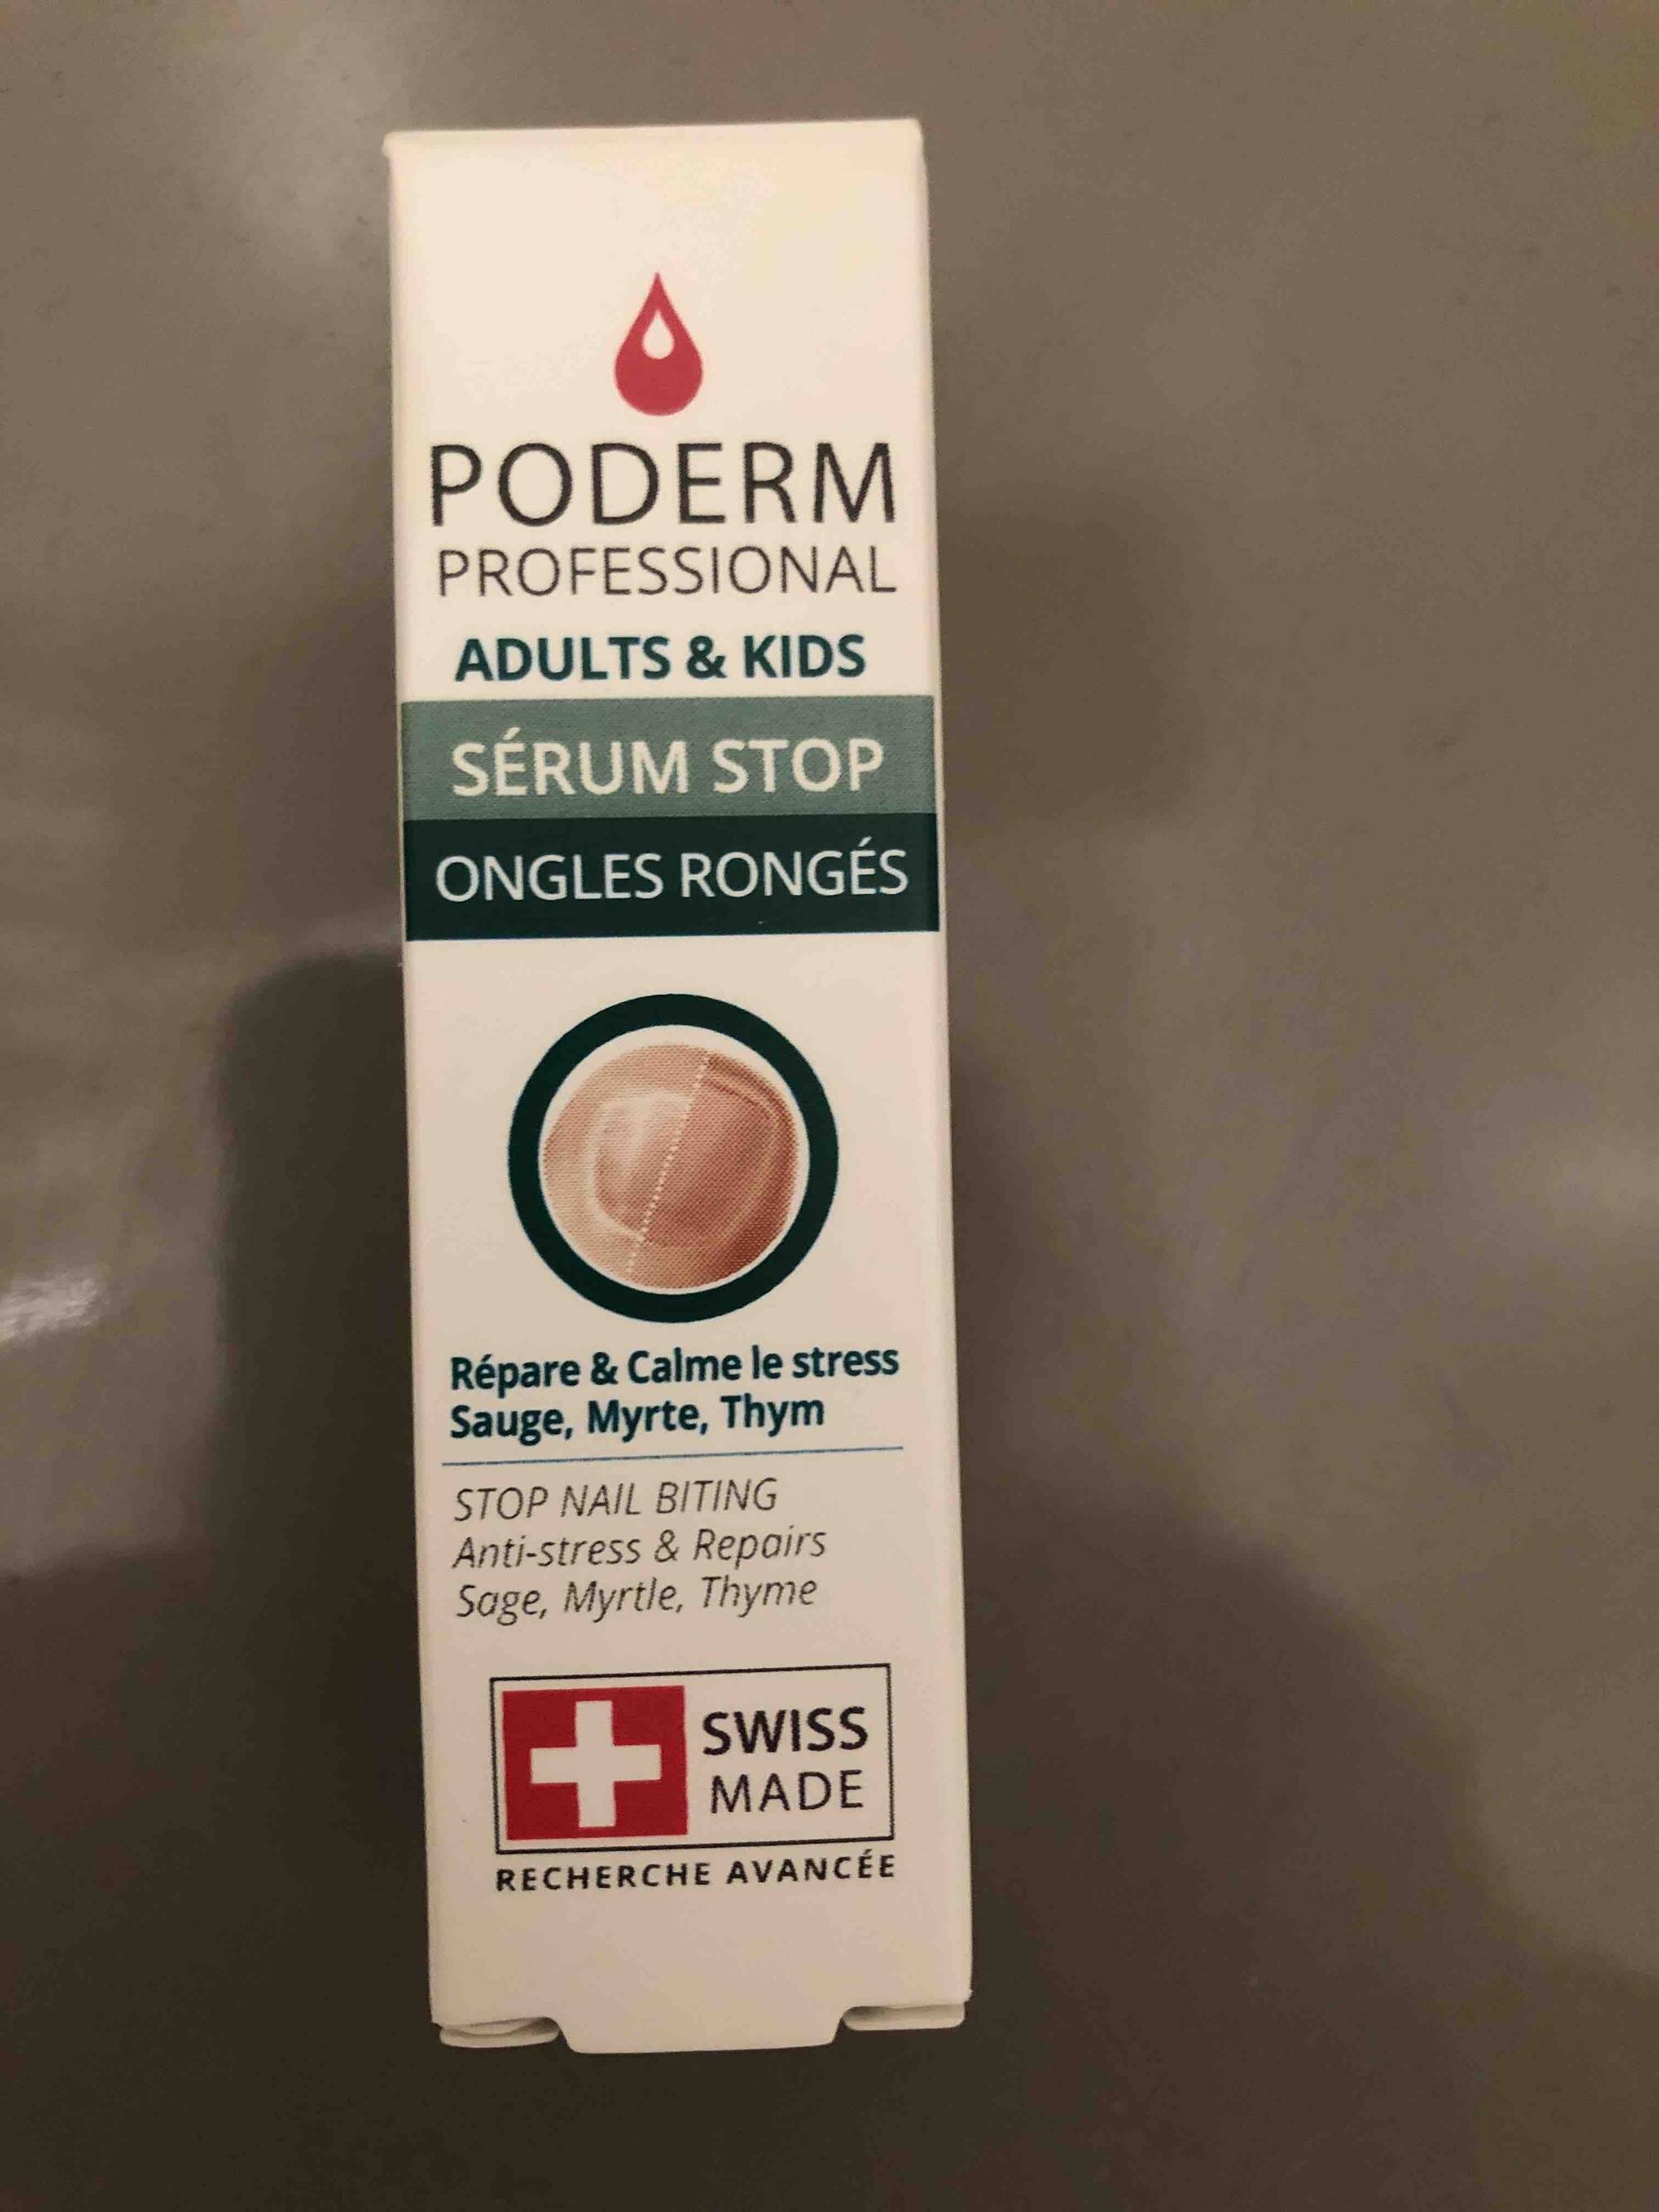 PODERM - Adults & kids - Sérum stop ongles rongés